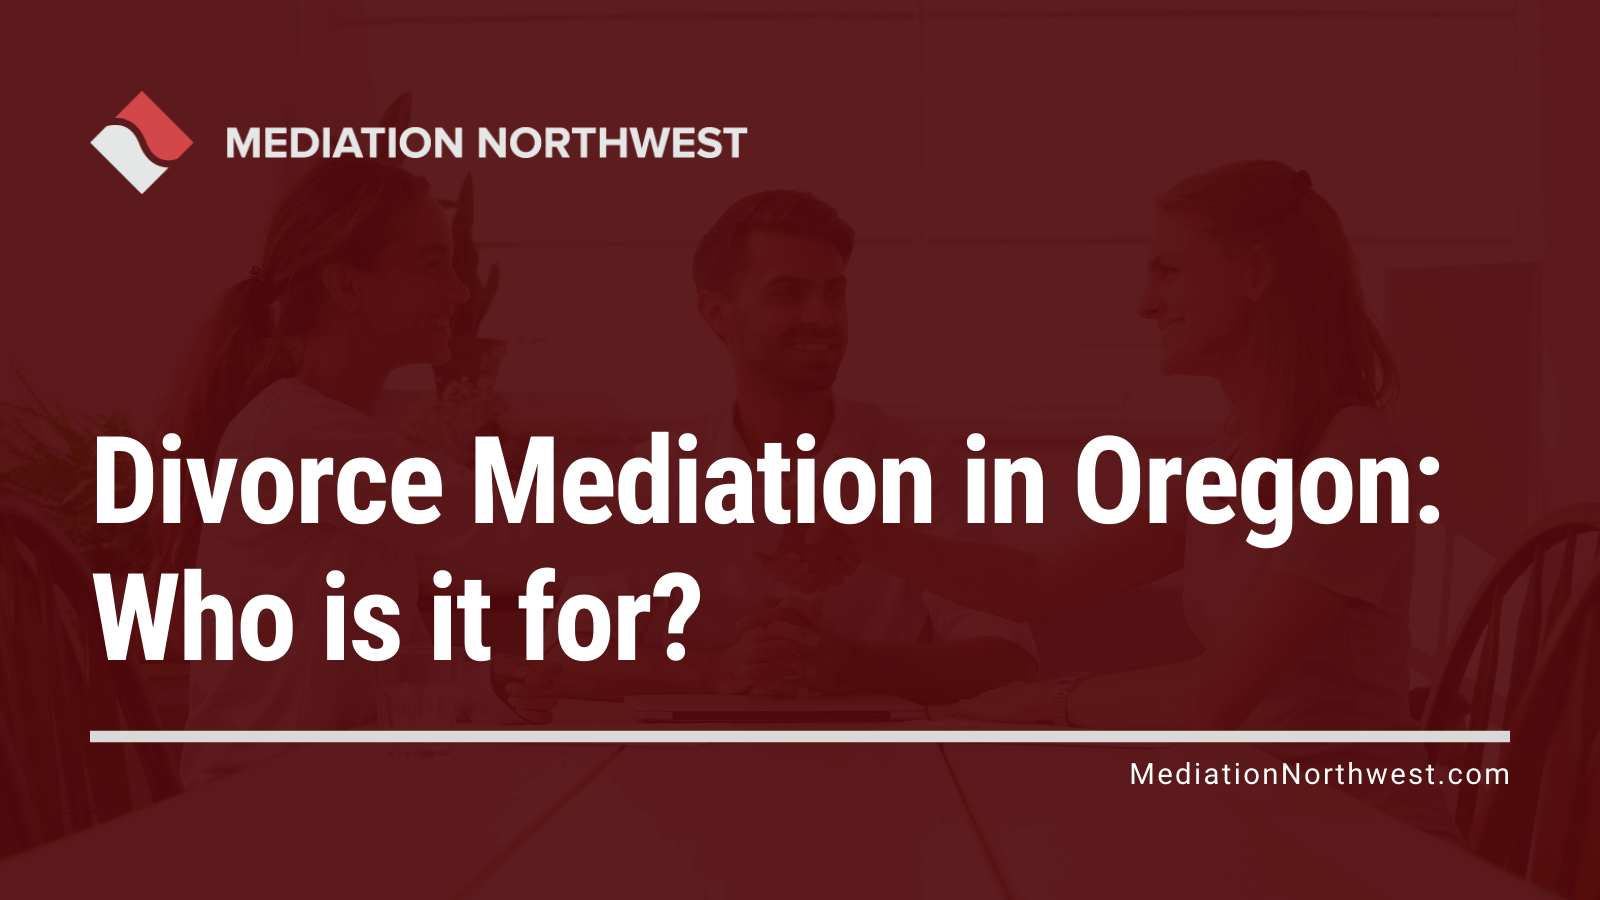 Divorce Mediation in Oregon - oregon divorce - mediation northwest -Julie Gentili